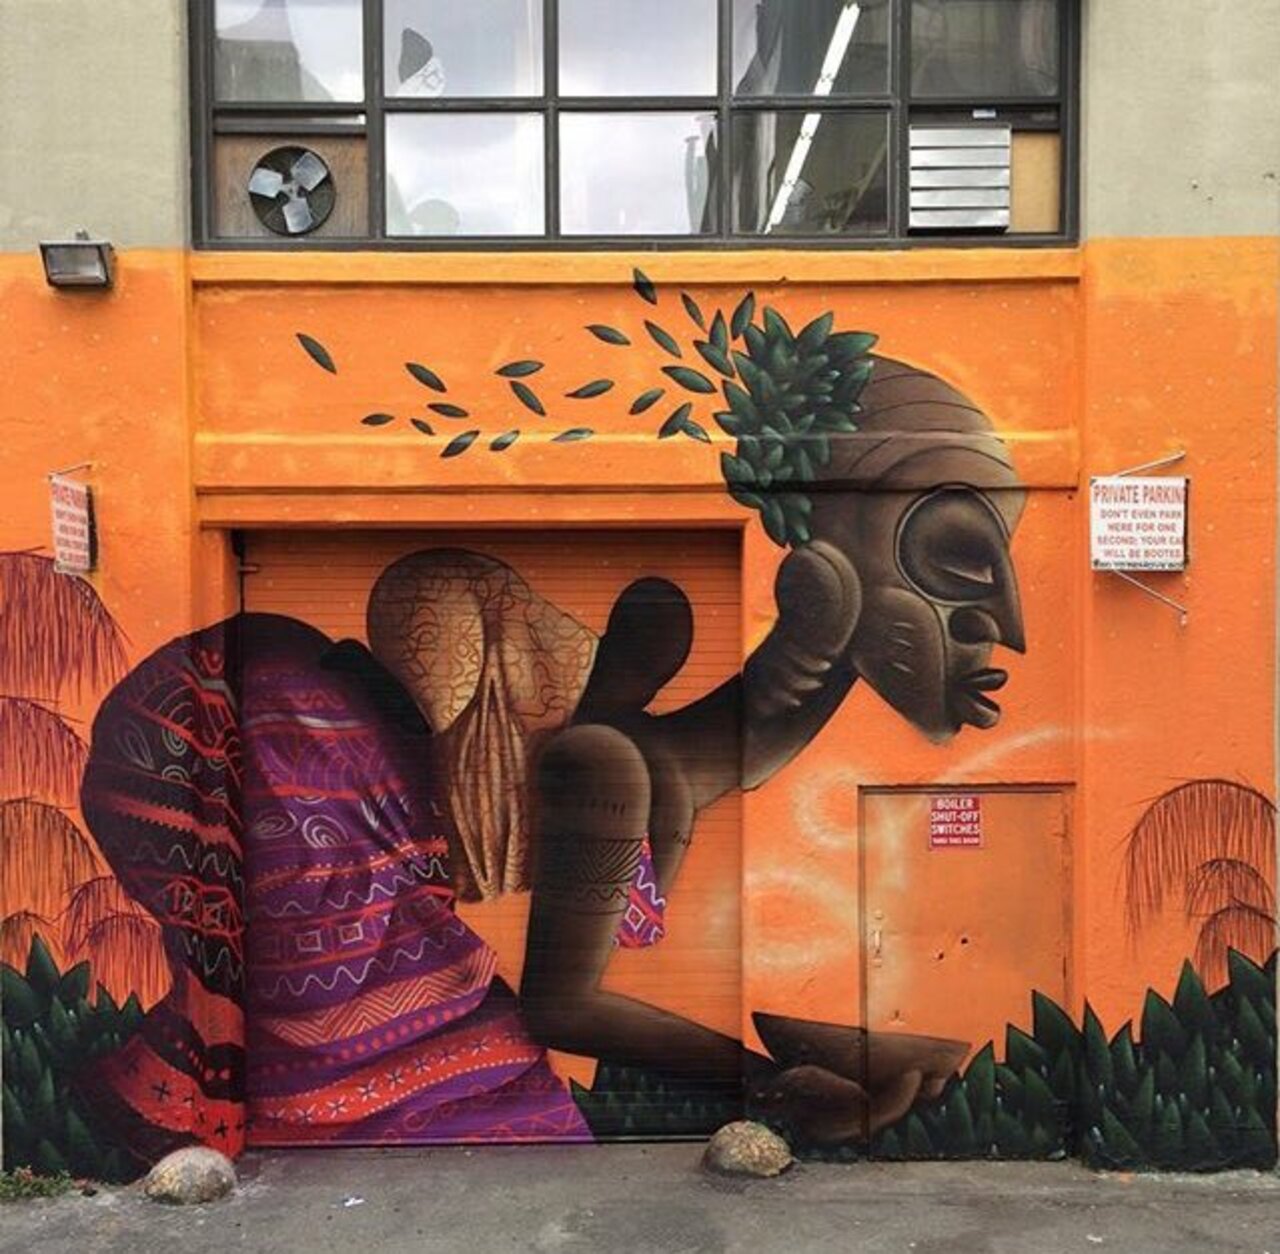 RT @Rabeliouus: RT @GoogleStreetArt: New Street Art by Alexandre Keto in NYC 

#art #graffiti #mural #streetart https://t.co/OzMg3o0lc9